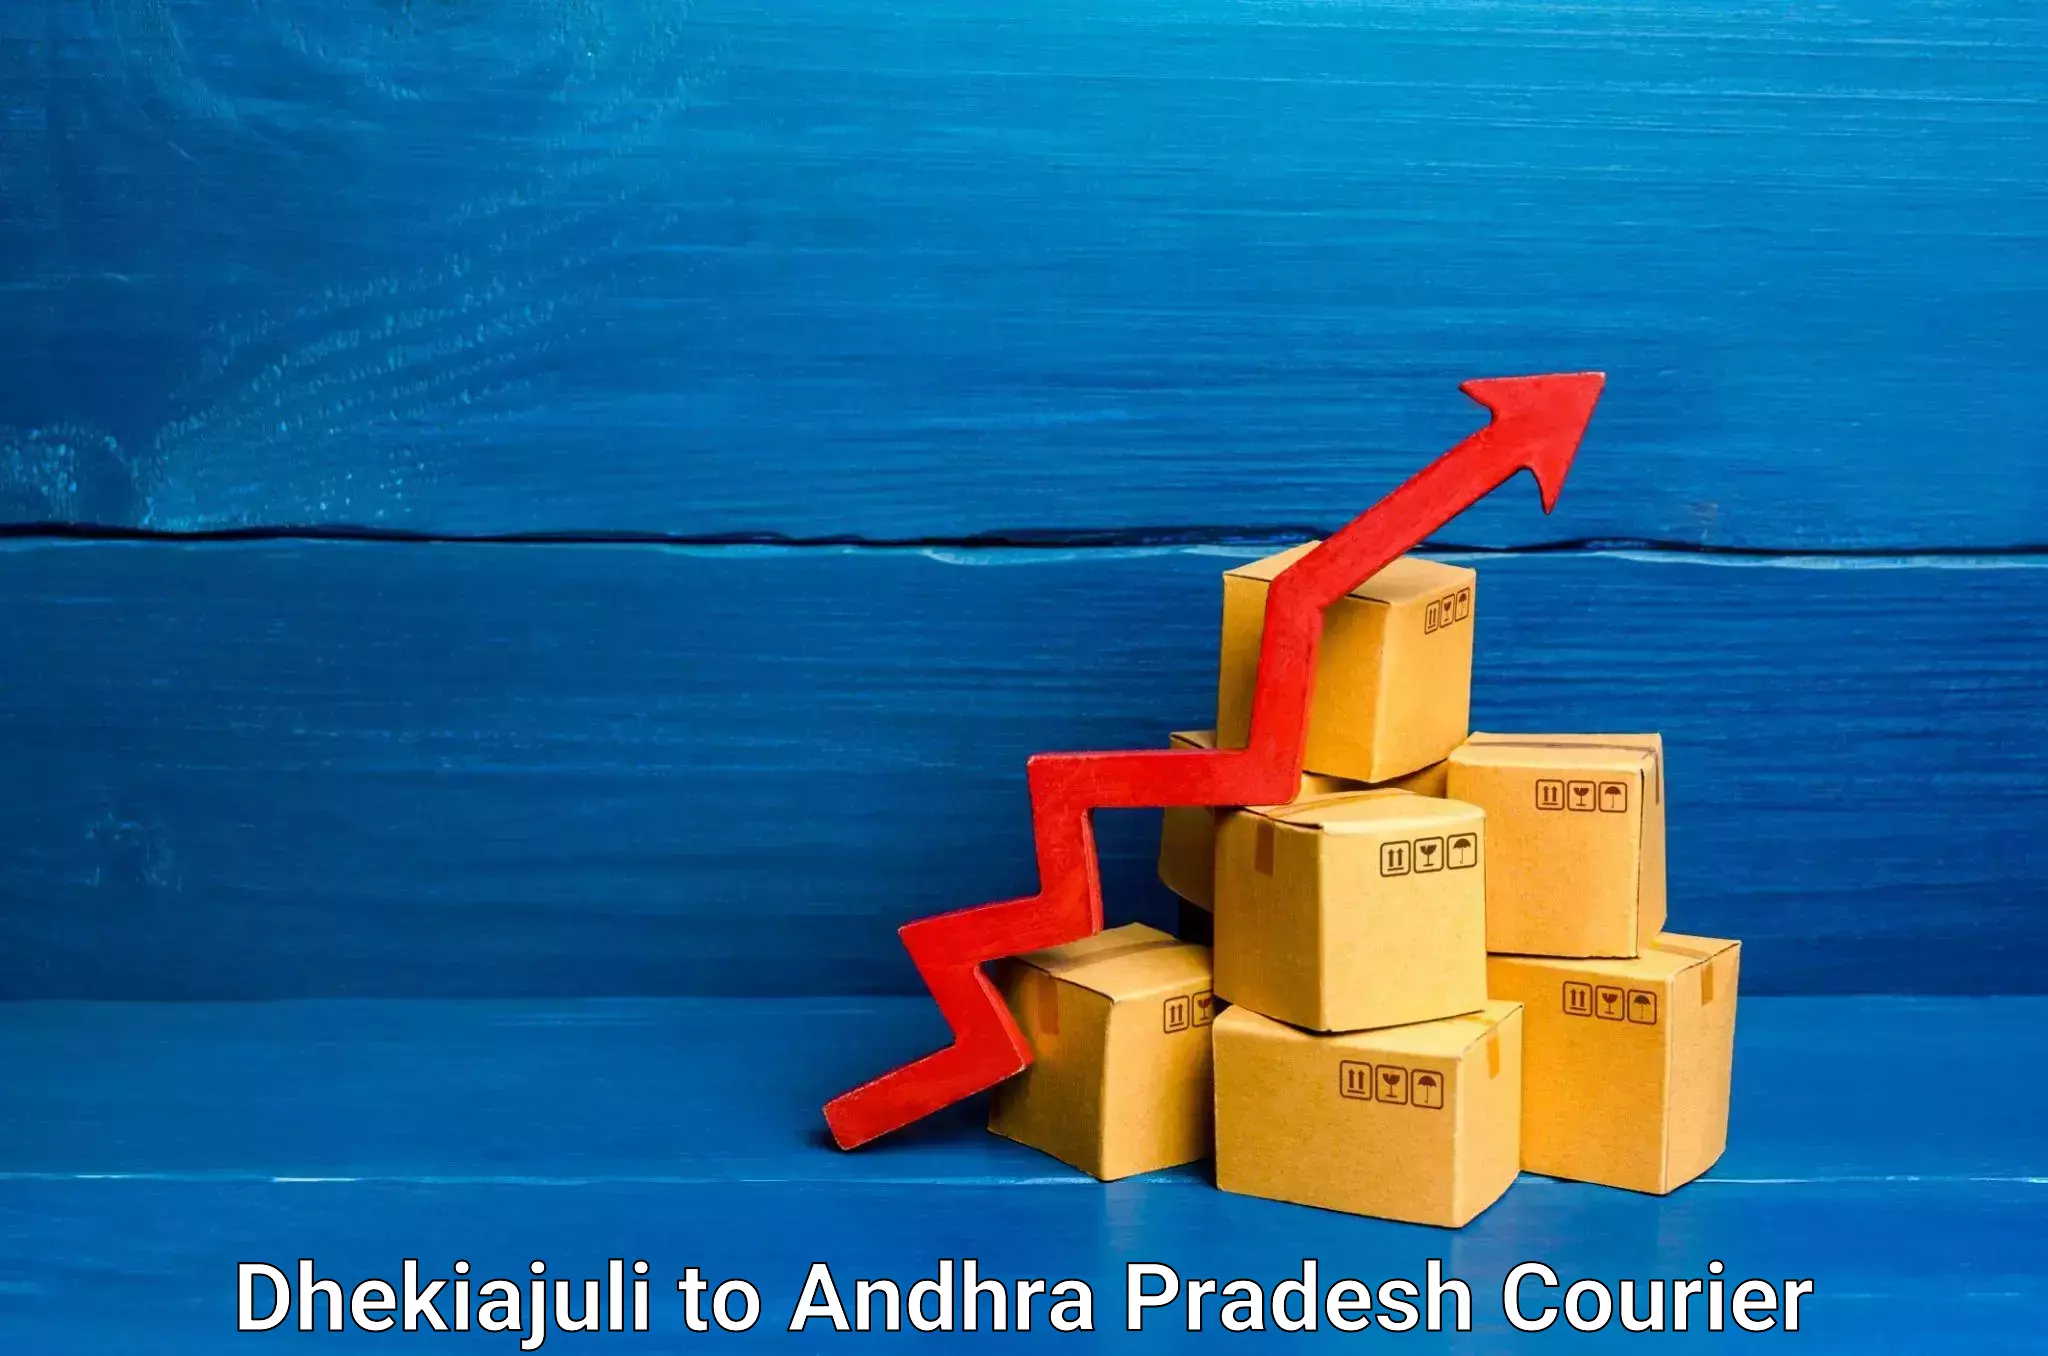 Tailored shipping plans Dhekiajuli to Andhra Pradesh